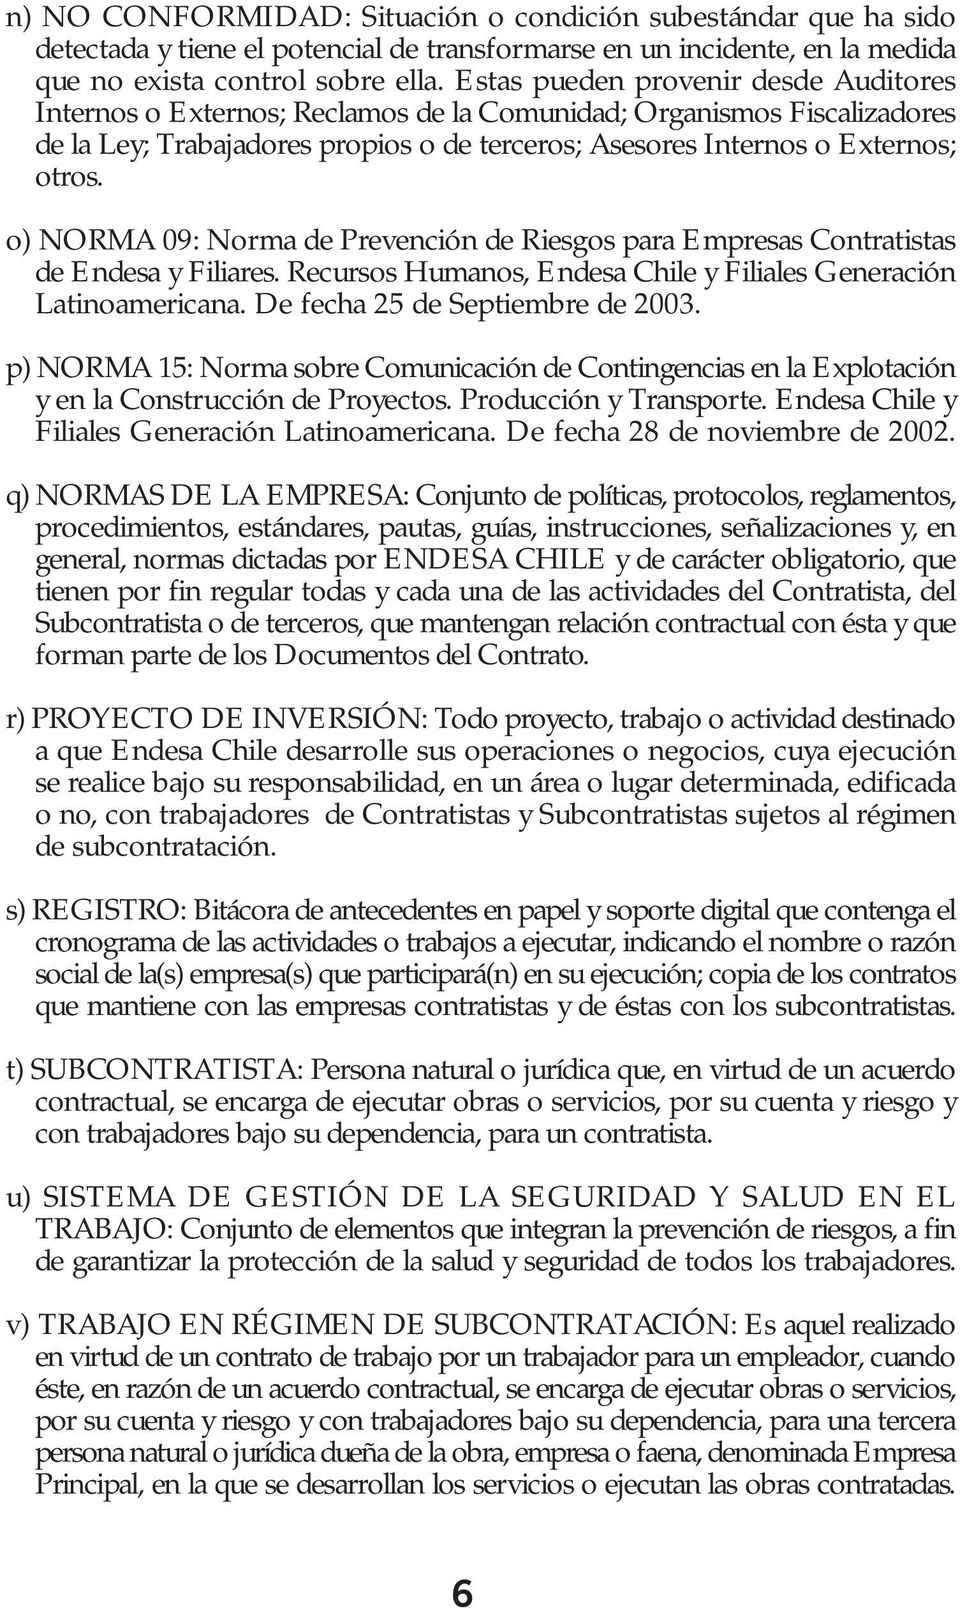 o) NORMA 09: Norma de Prevención de Riesgos para Empresas Contratistas de Endesa y Filiares. Recursos Humanos, Endesa Chile y Filiales Generación Latinoamericana. De fecha 25 de Septiembre de 2003.